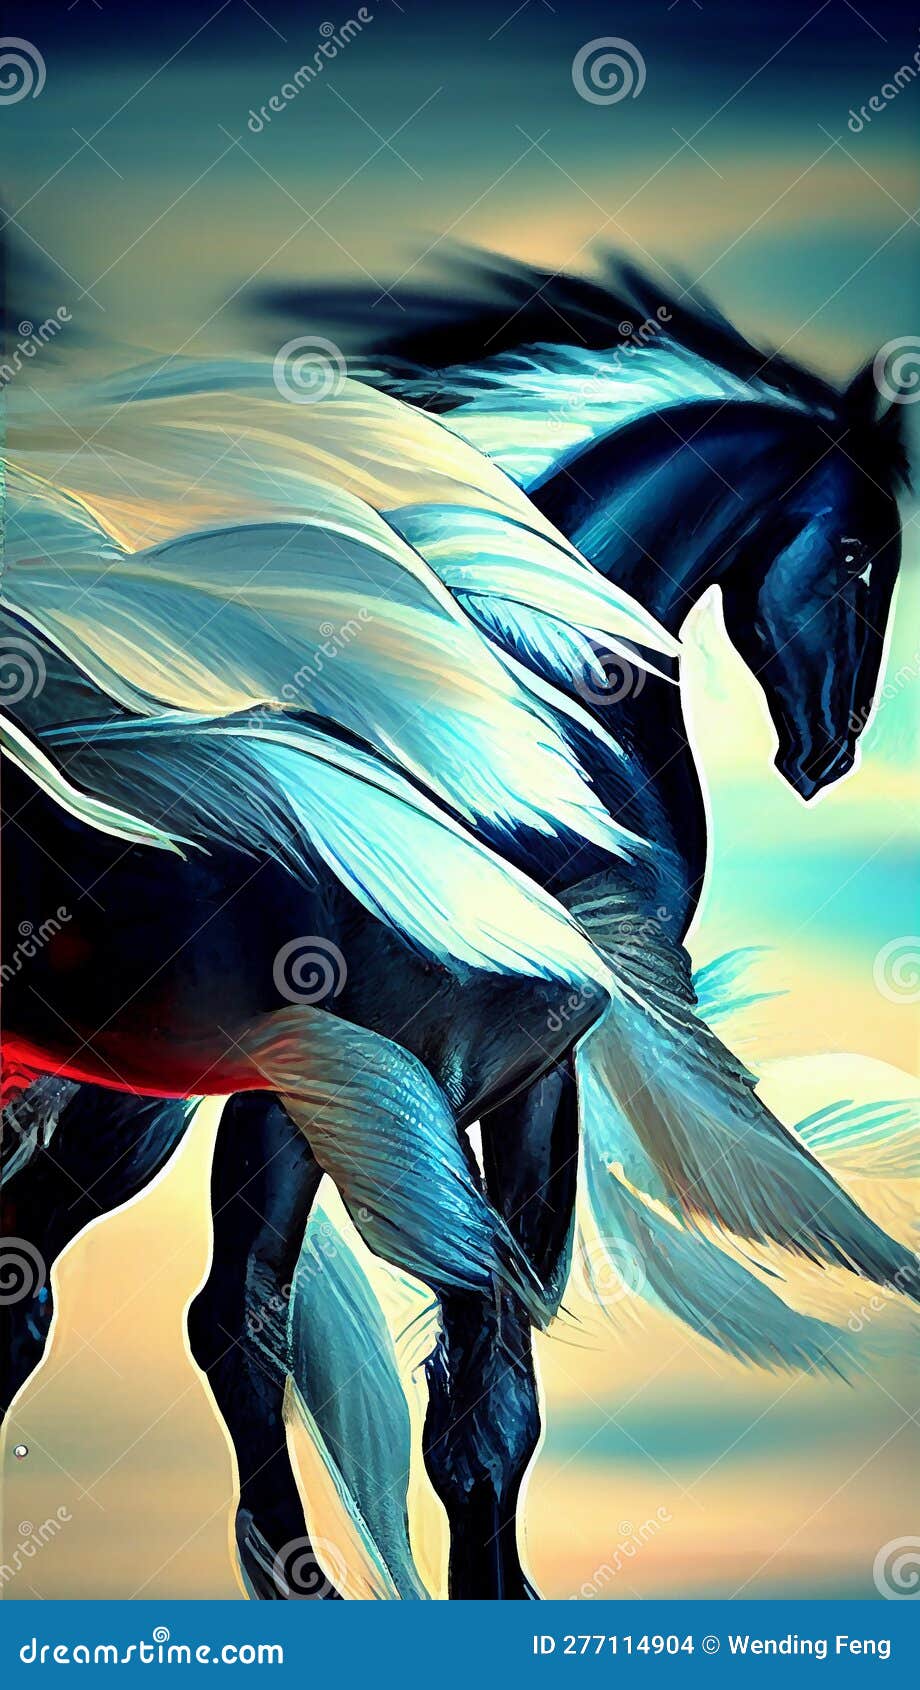 Arte e Decoração de Parede Desenho Da Cabeça De Cavalo